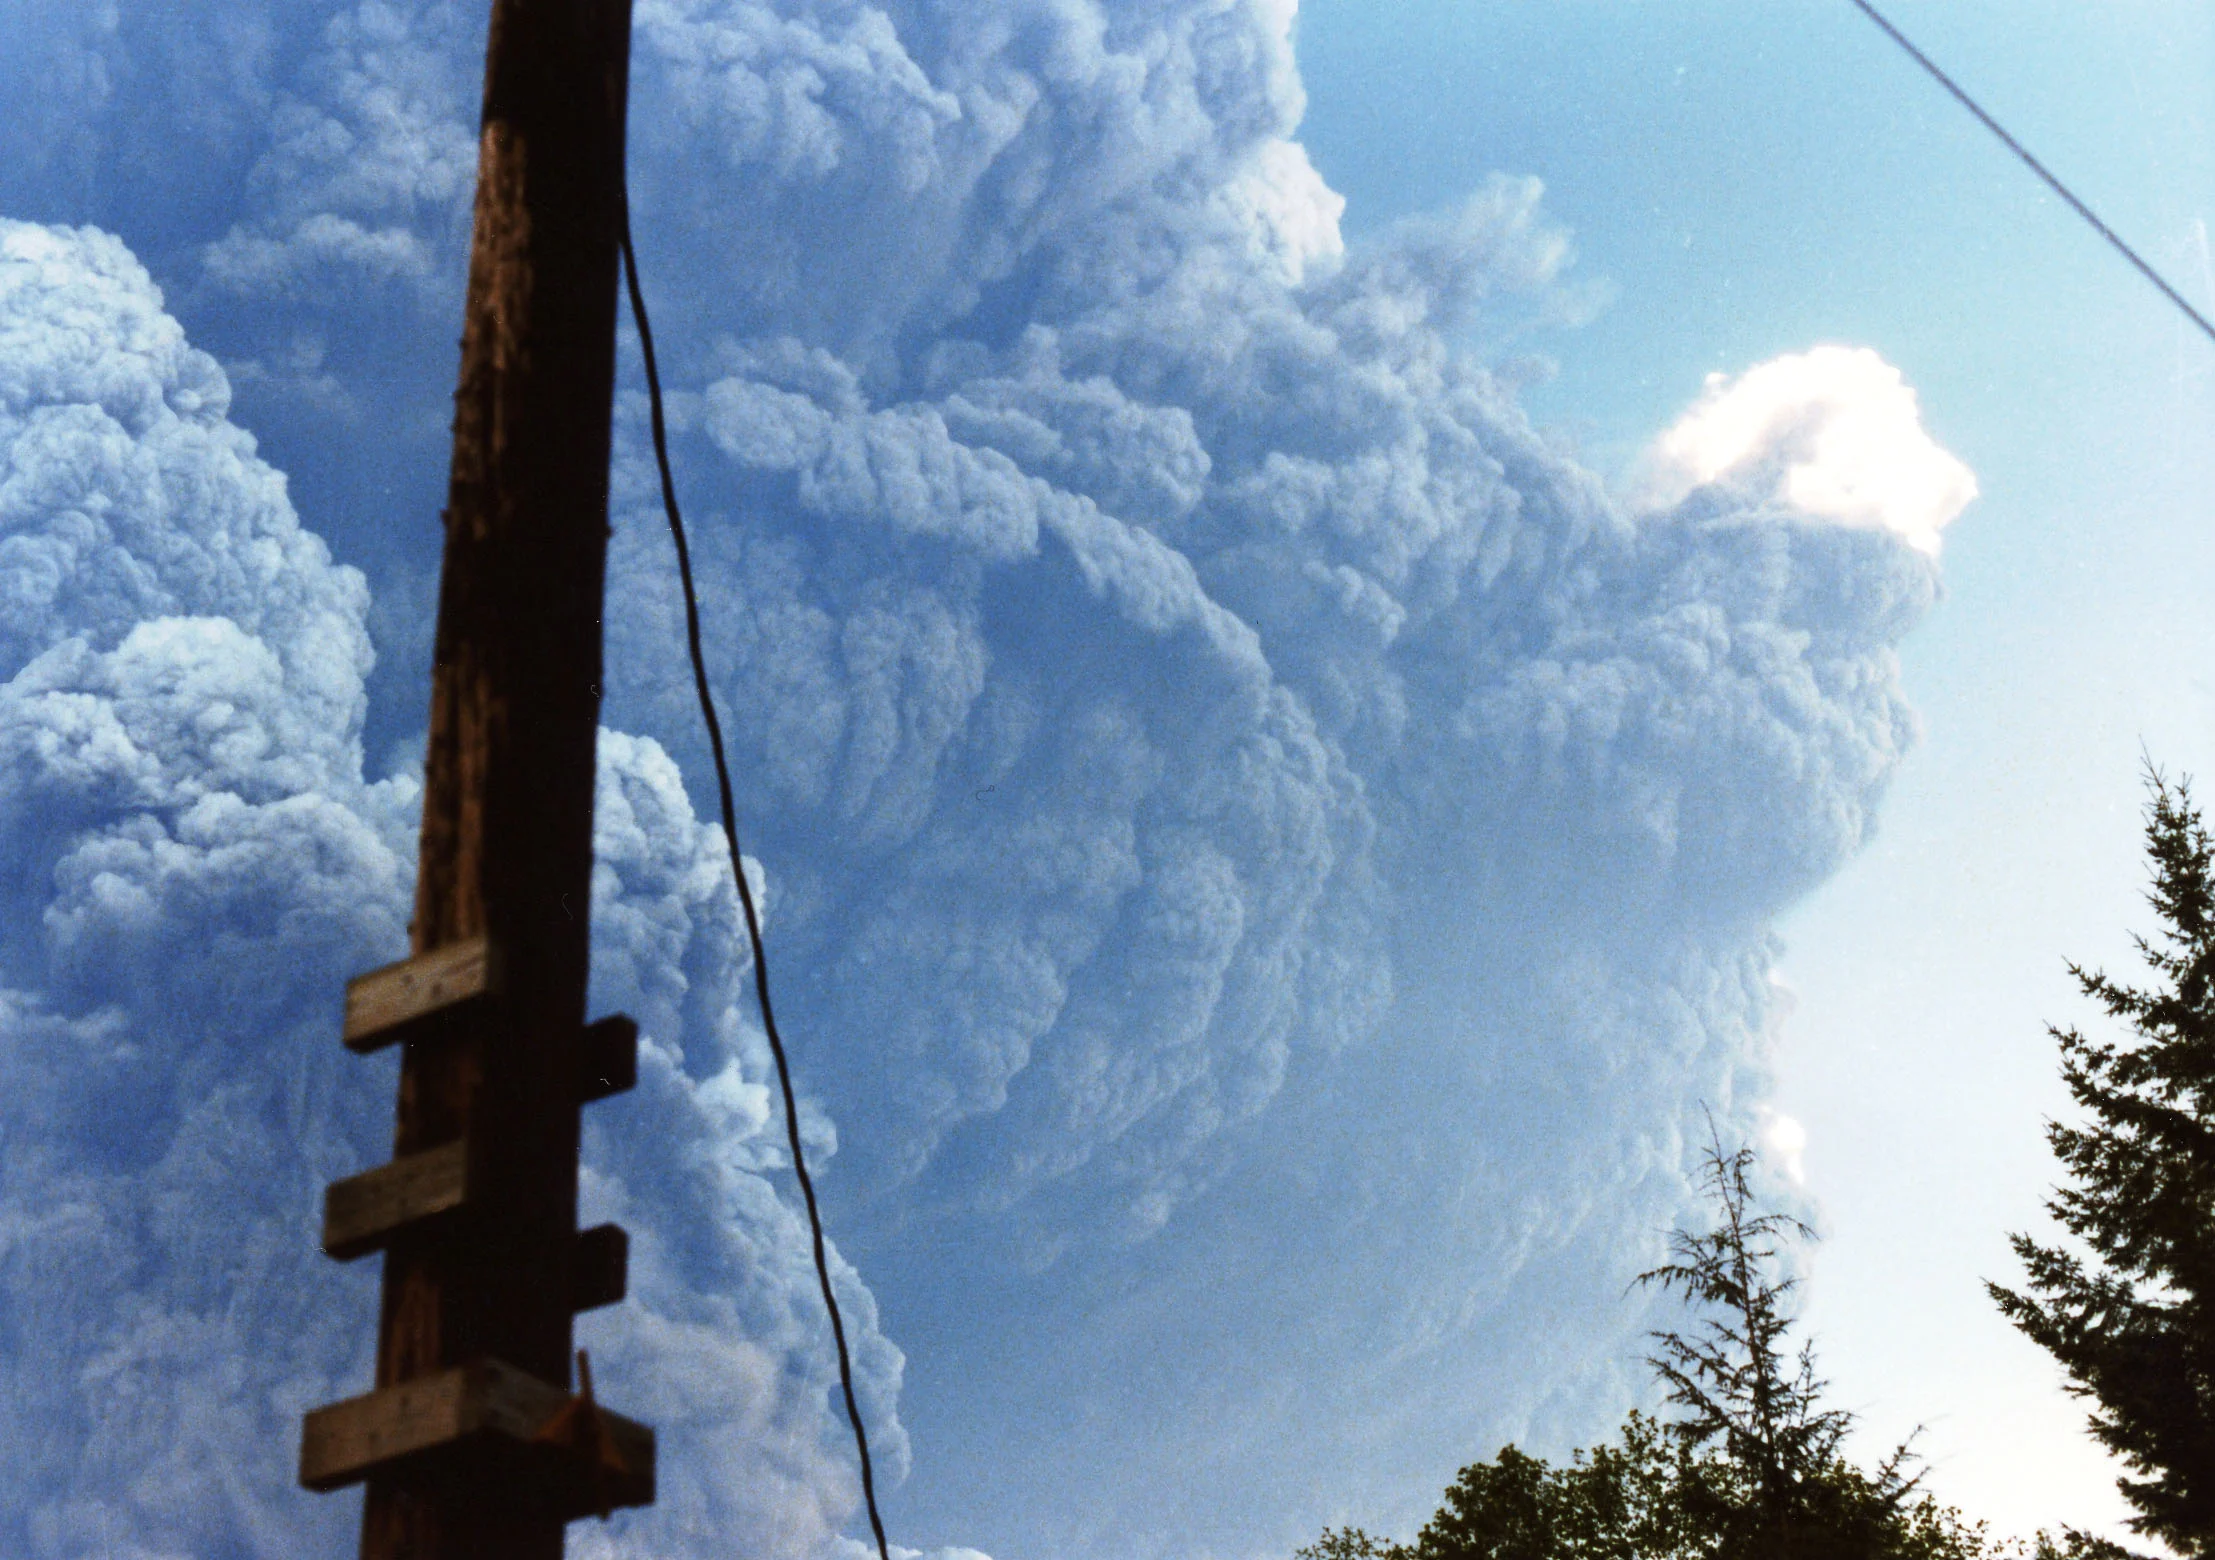 1980 Mount St. Helens eruption